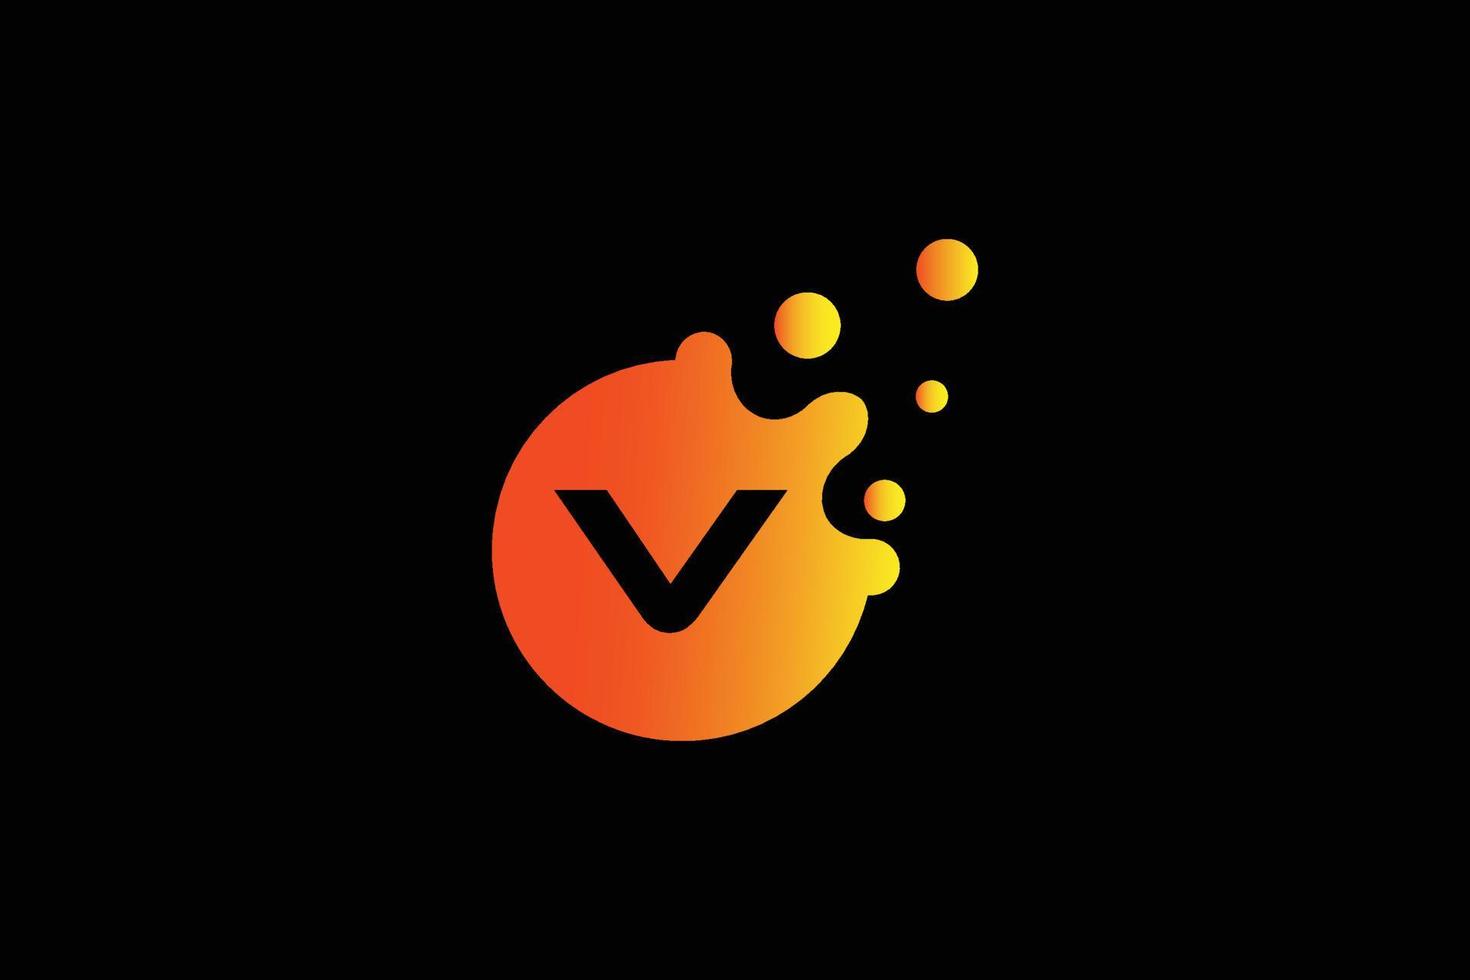 Buchstabe V-Logo. v Briefdesignvektor mit Punktvektorillustration. buchstabenmarkenlogo mit orange und gelbem verlauf. vektor